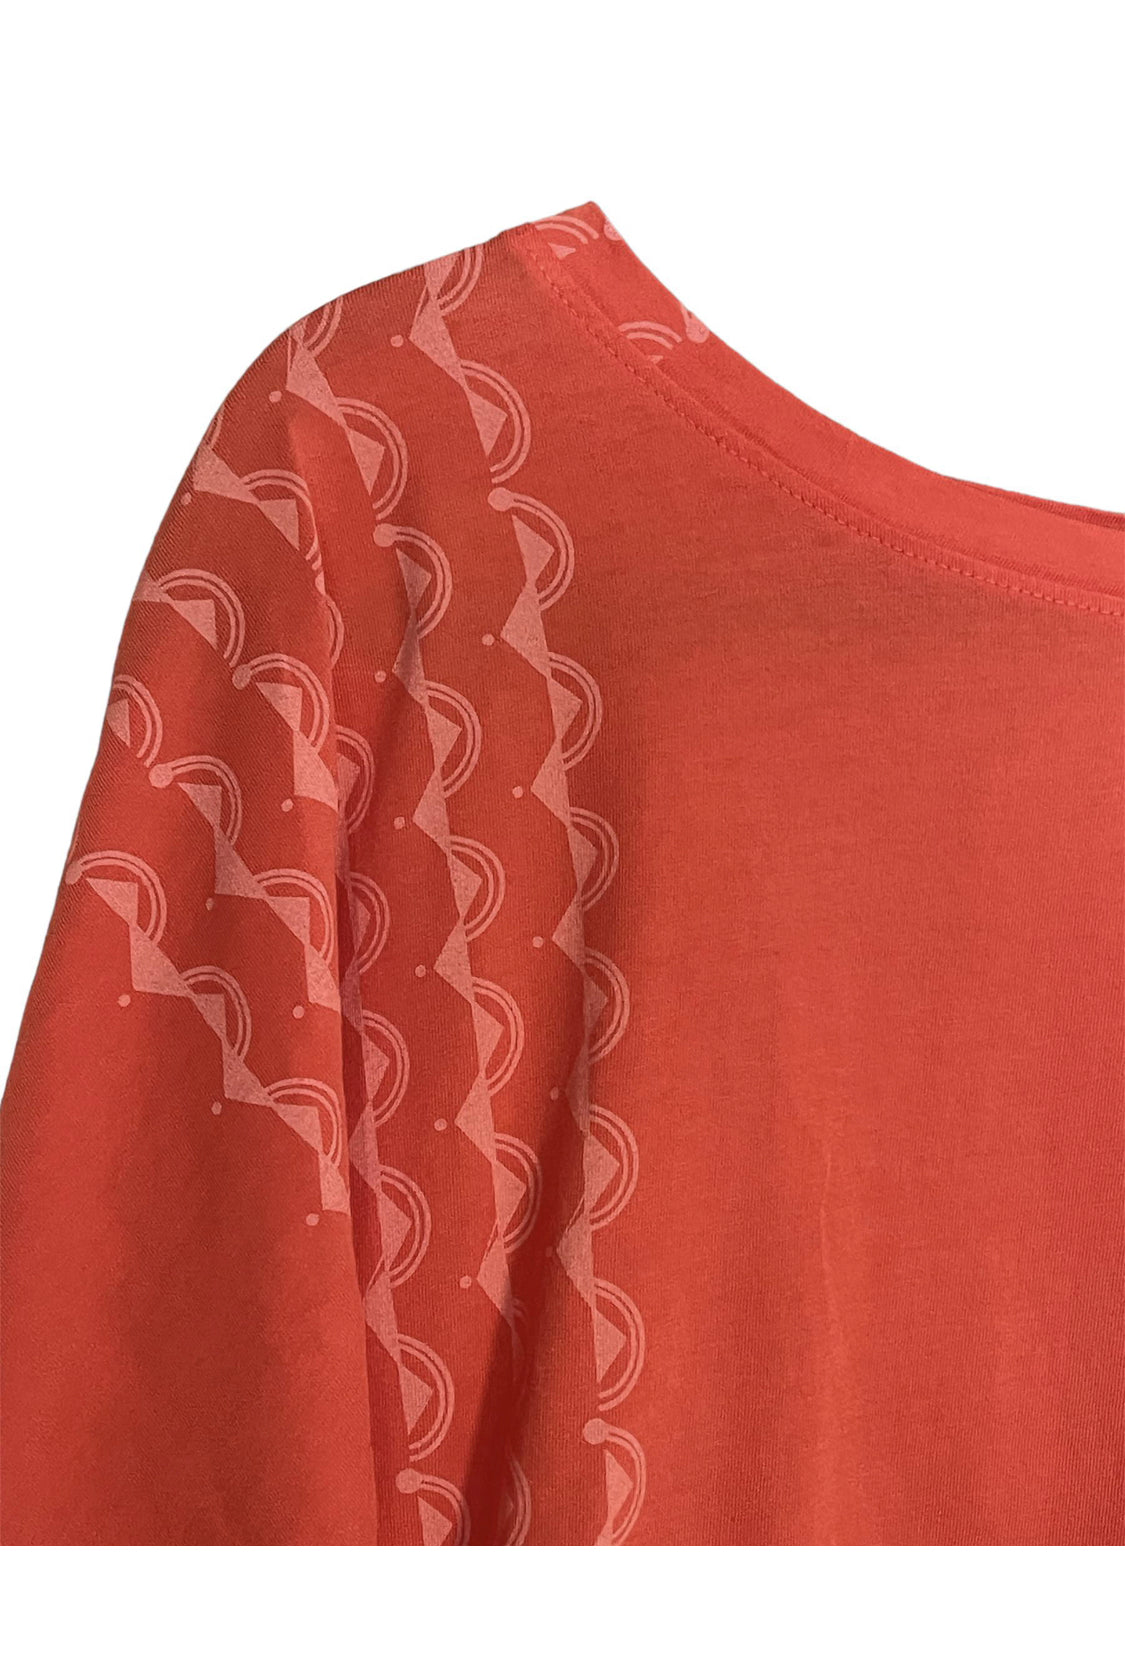 Haumea I. - Nā Mo'opuna | Kimono top - orange